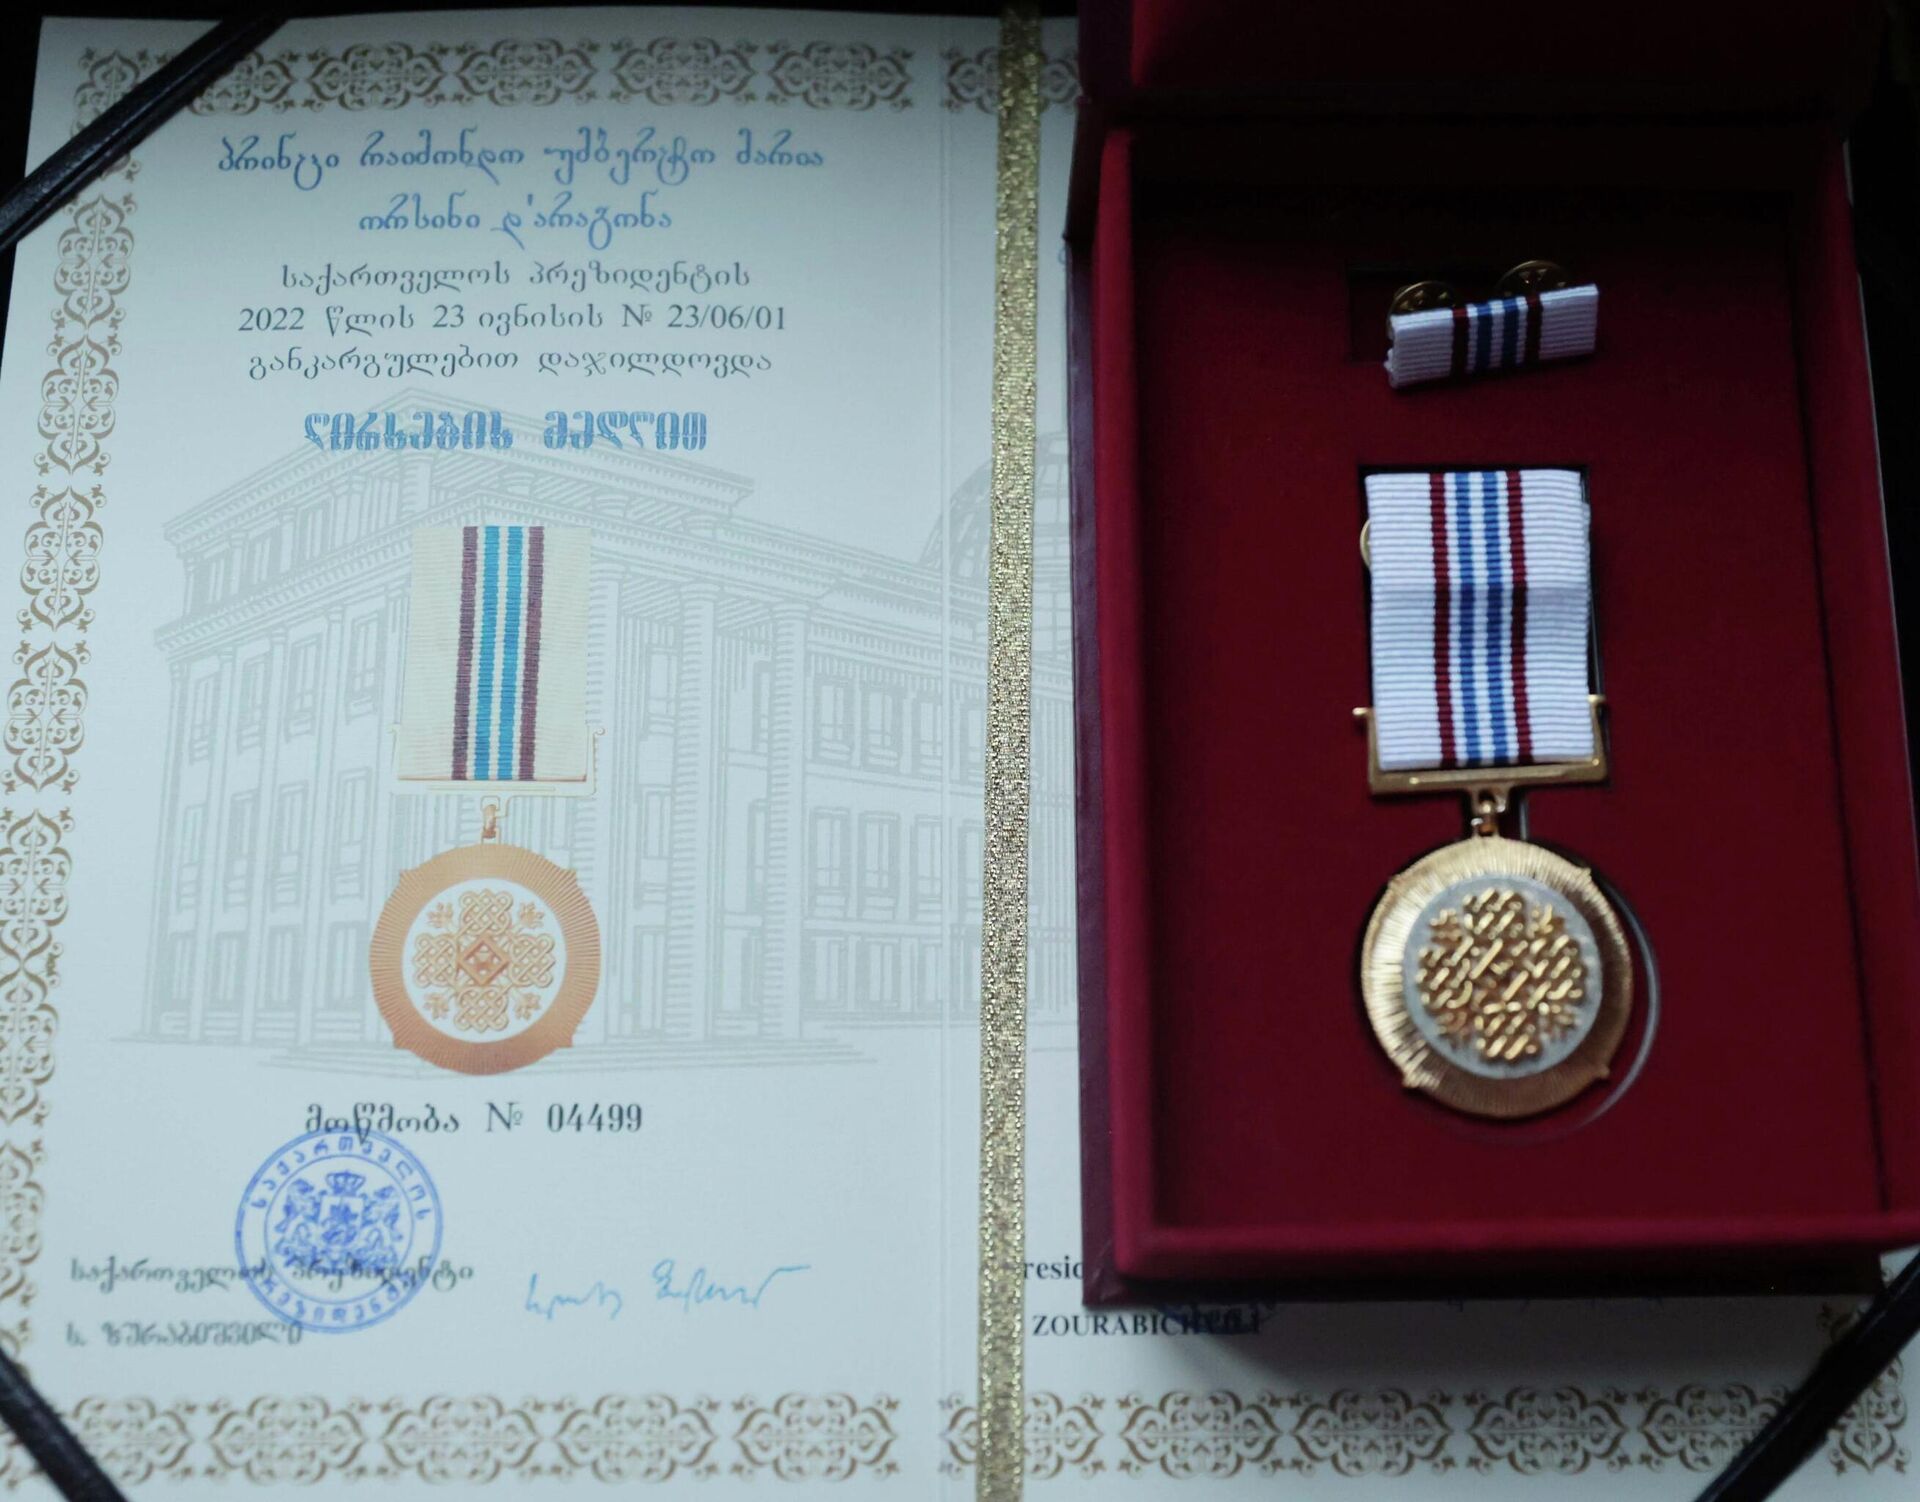 Президент Грузии Саломе Зурабишвили наградила принца Раймондо Орсини д'Арагона Медалью почета посмертно - Sputnik Грузия, 1920, 28.06.2022